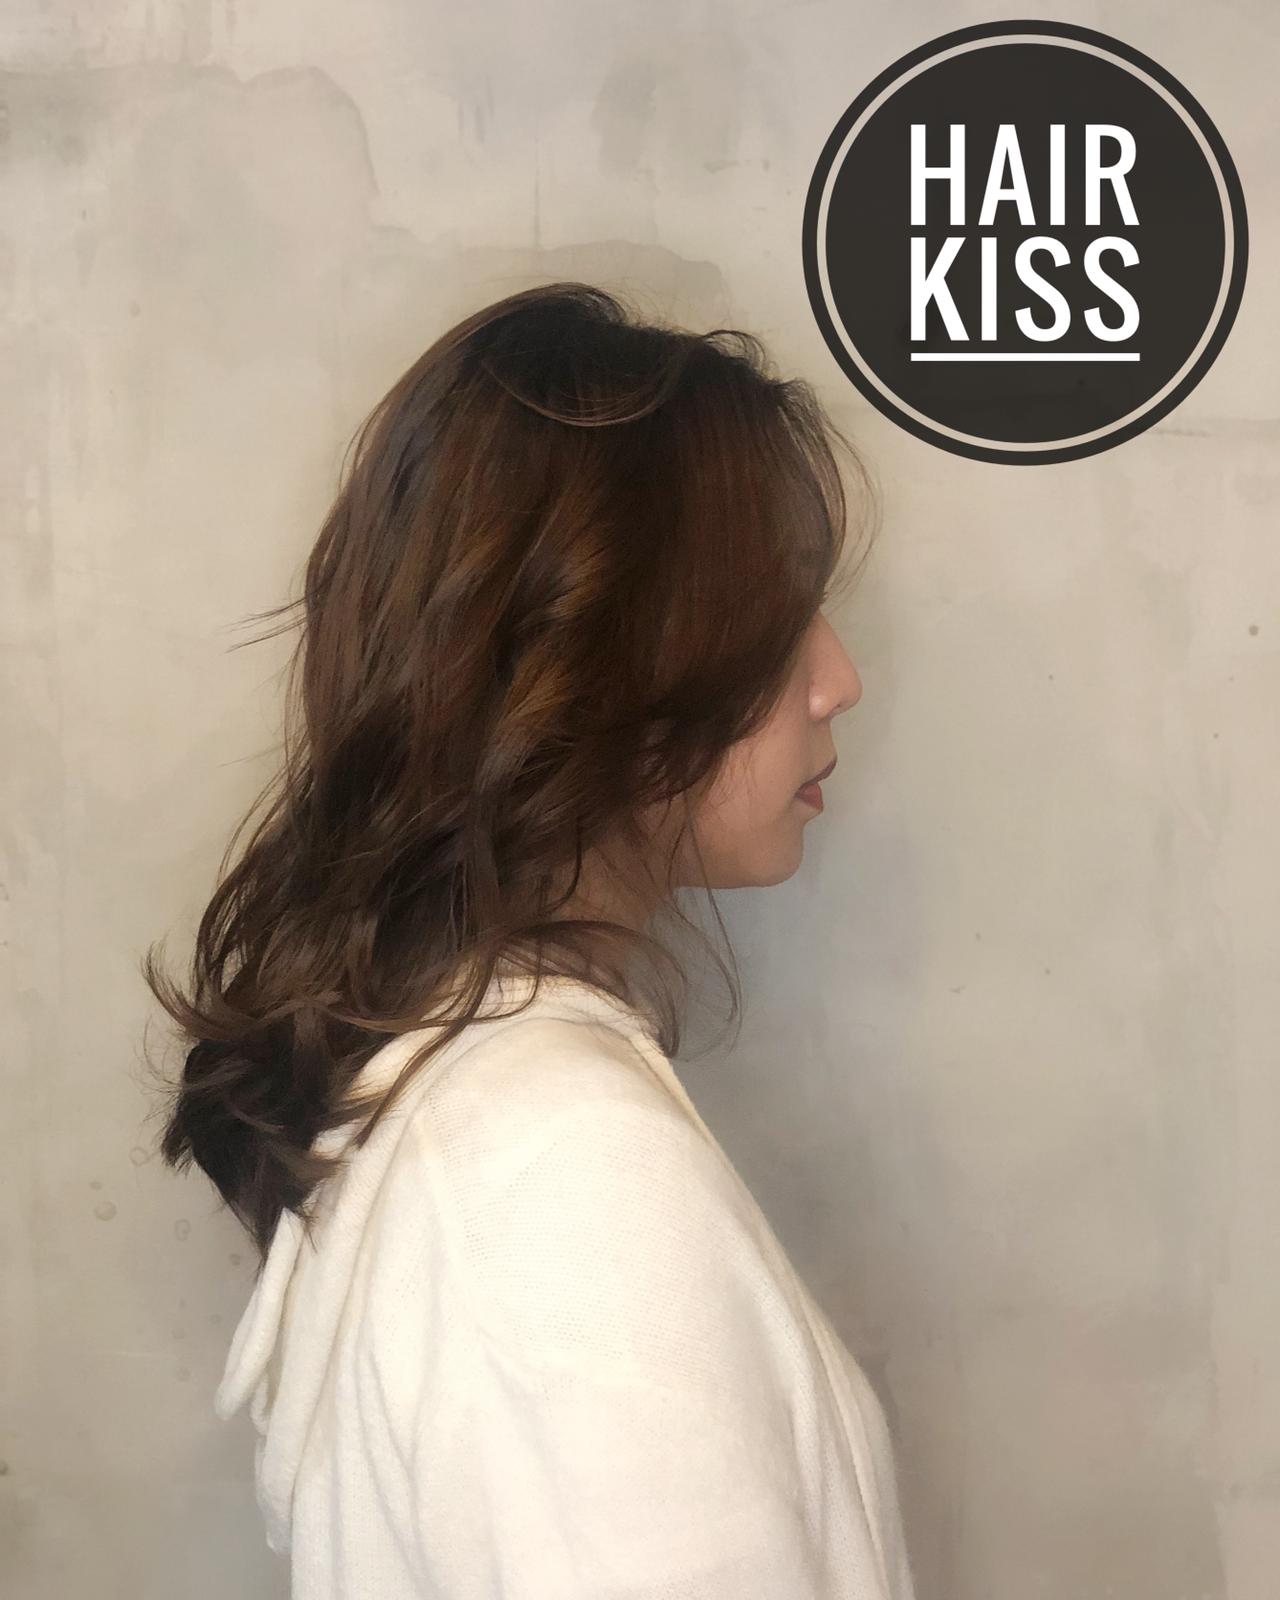 作品參考 / 最新消息:Hair Kiss ❤️